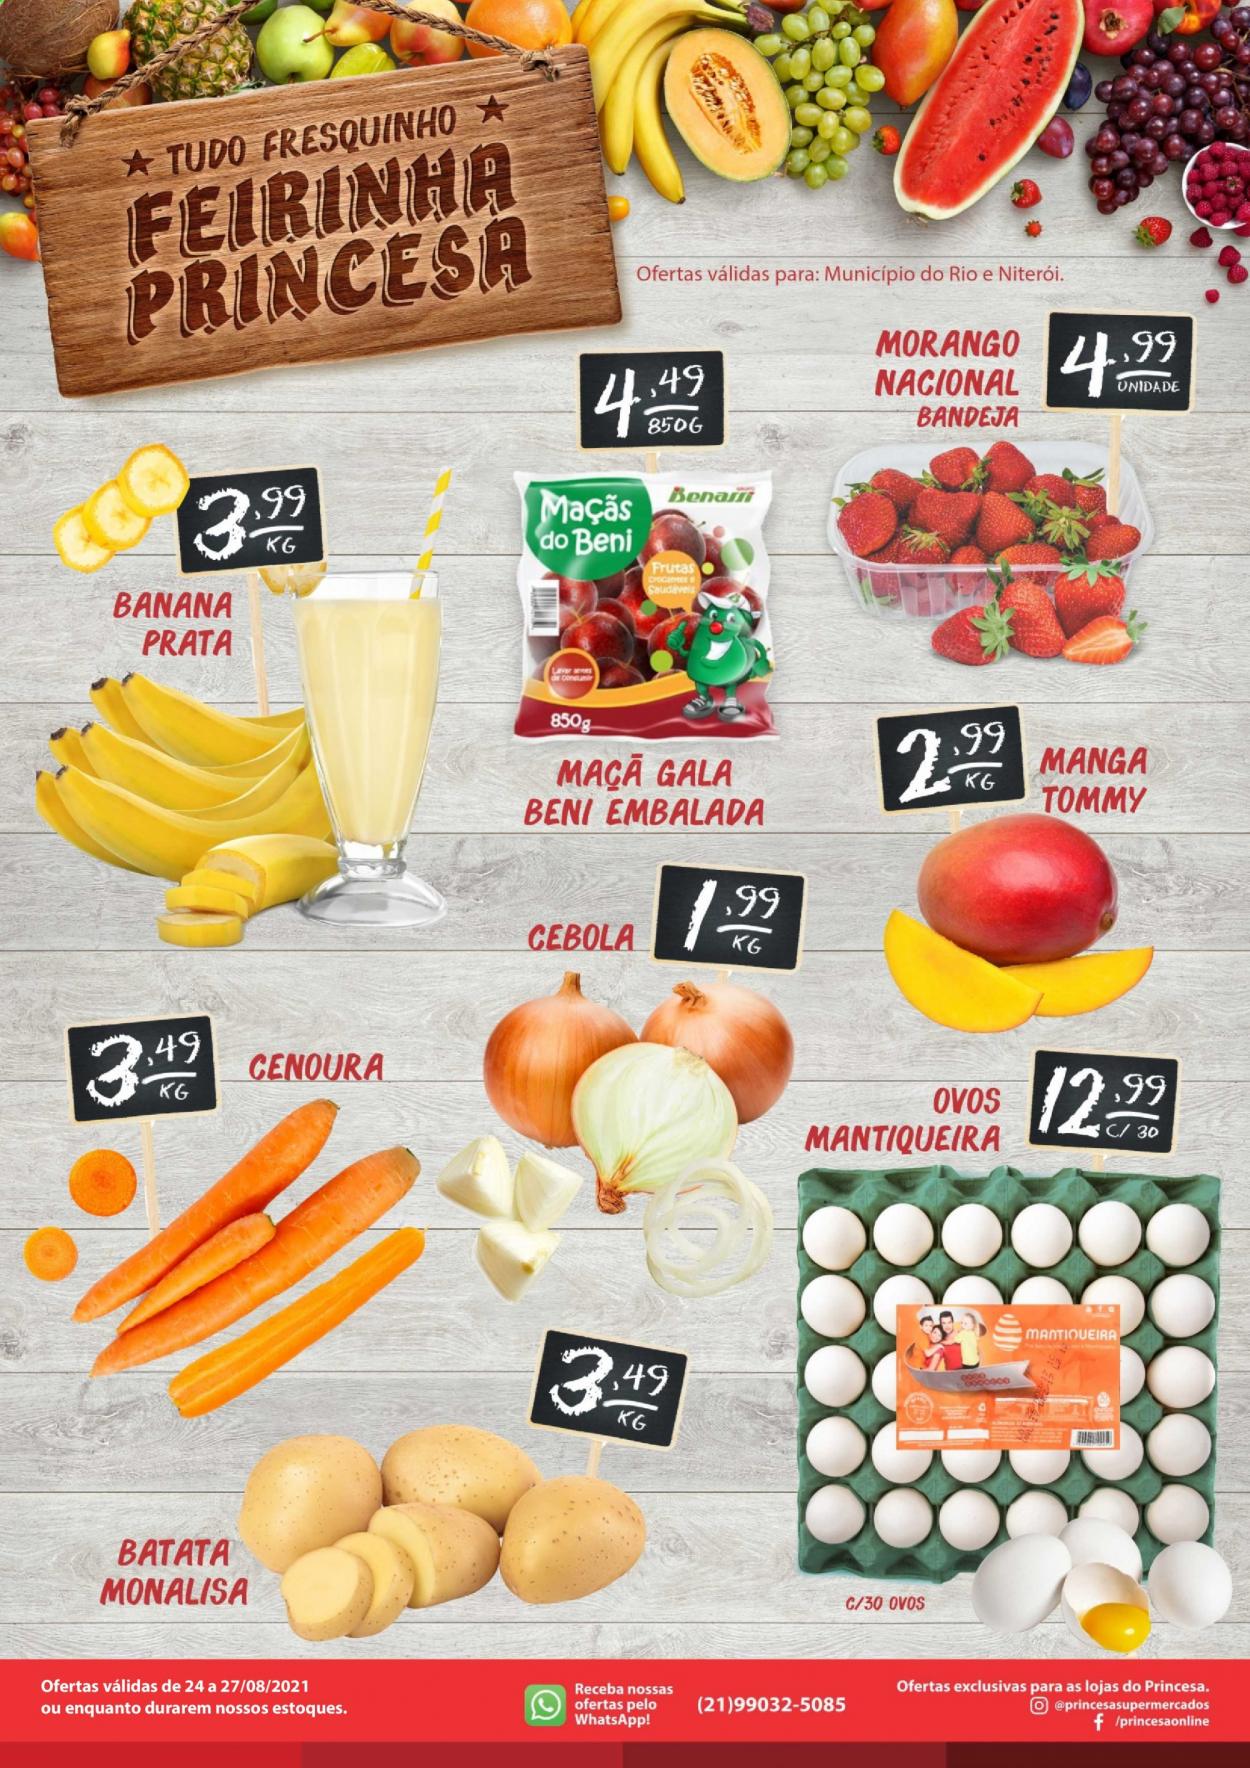 thumbnail - Folheto Princesa Supermercados - 24/08/2021 - 27/08/2021 - Produtos em promoção - banana, maçã, morango, manga, cebola, cenoura, ovos, bandeja. Página 1.